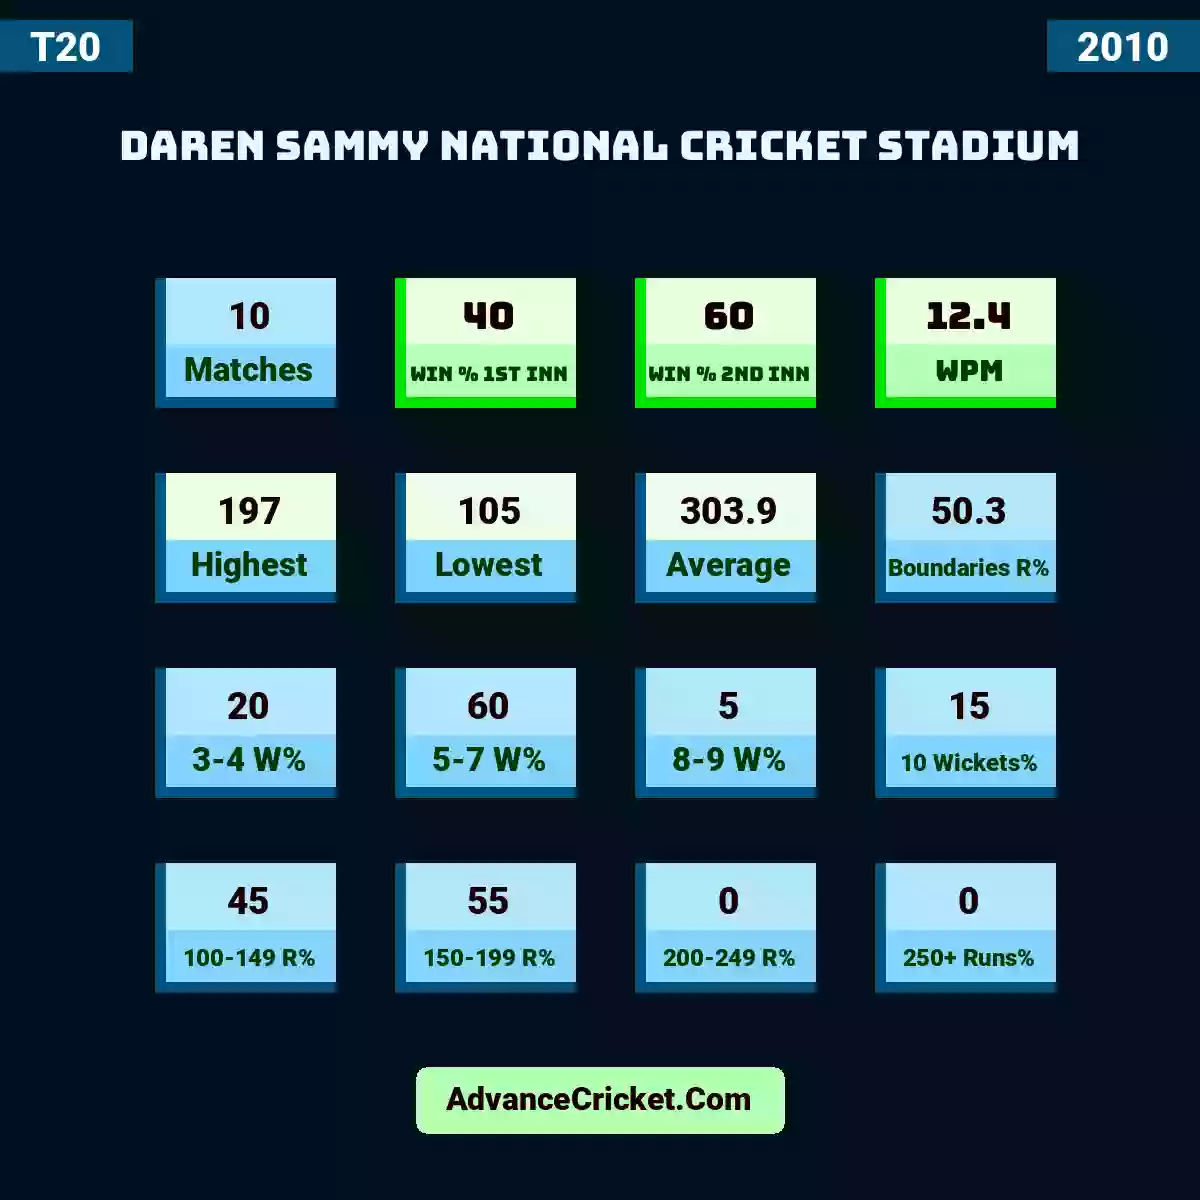 Image showing Daren Sammy National Cricket Stadium with Matches: 10, Win % 1st Inn: 40, Win % 2nd Inn: 60, WPM: 12.4, Highest: 197, Lowest: 105, Average: 303.9, Boundaries R%: 50.3, 3-4 W%: 20, 5-7 W%: 60, 8-9 W%: 5, 10 Wickets%: 15, 100-149 R%: 45, 150-199 R%: 55, 200-249 R%: 0, 250+ Runs%: 0.